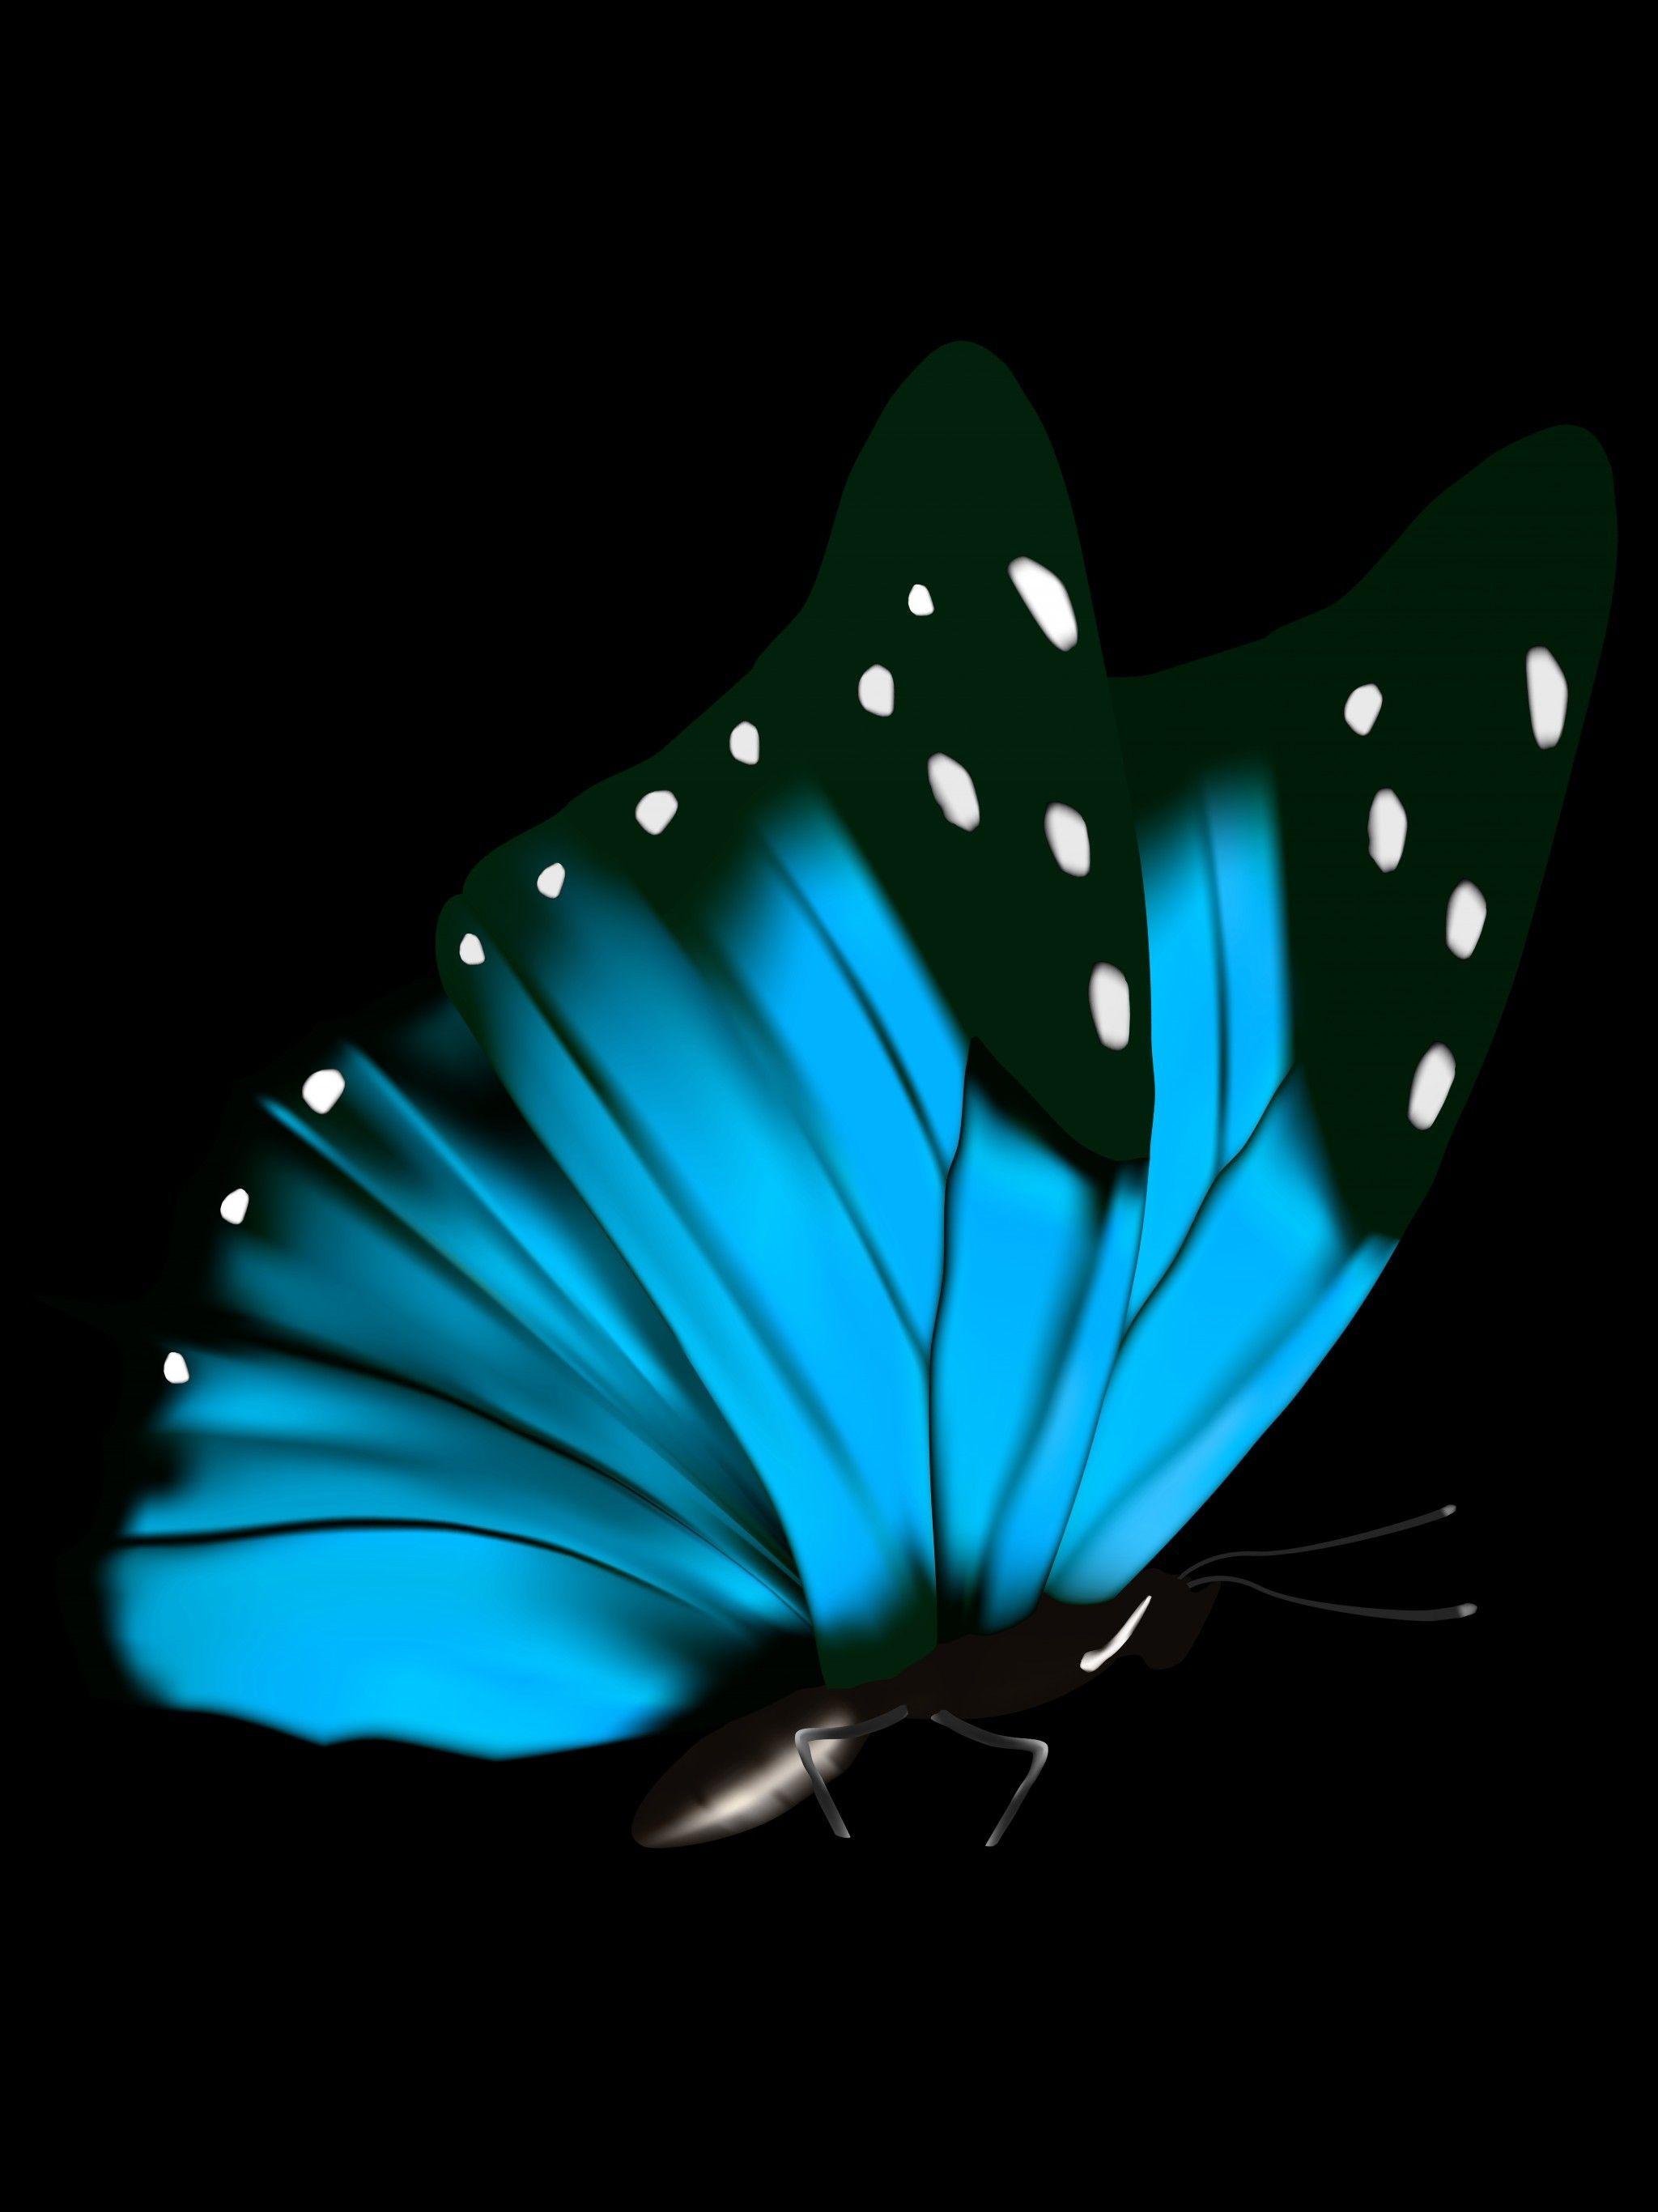 Mới chỉ là một con bướm đen nhưng bàn tay nghệ sĩ đã tạo nên một tác phẩm nghệ thuật sống động. Hãy thưởng thức bức ảnh để cảm nhận được những nét đẹp quyến rũ của nó trong bóng tối.